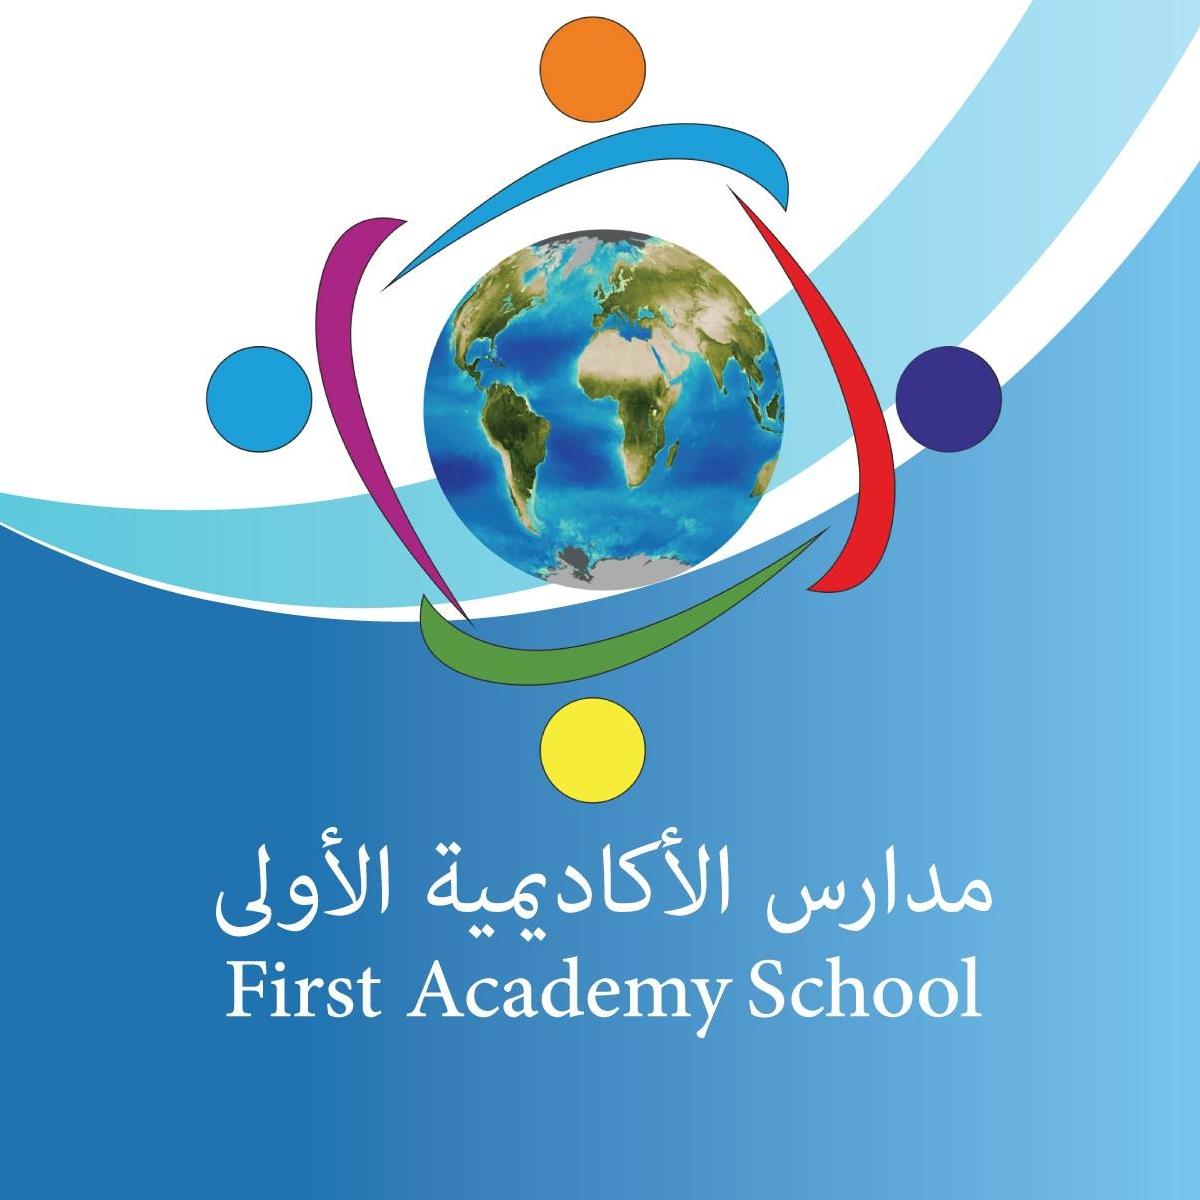 مدارس الأكاديمية الأولى للتعليم